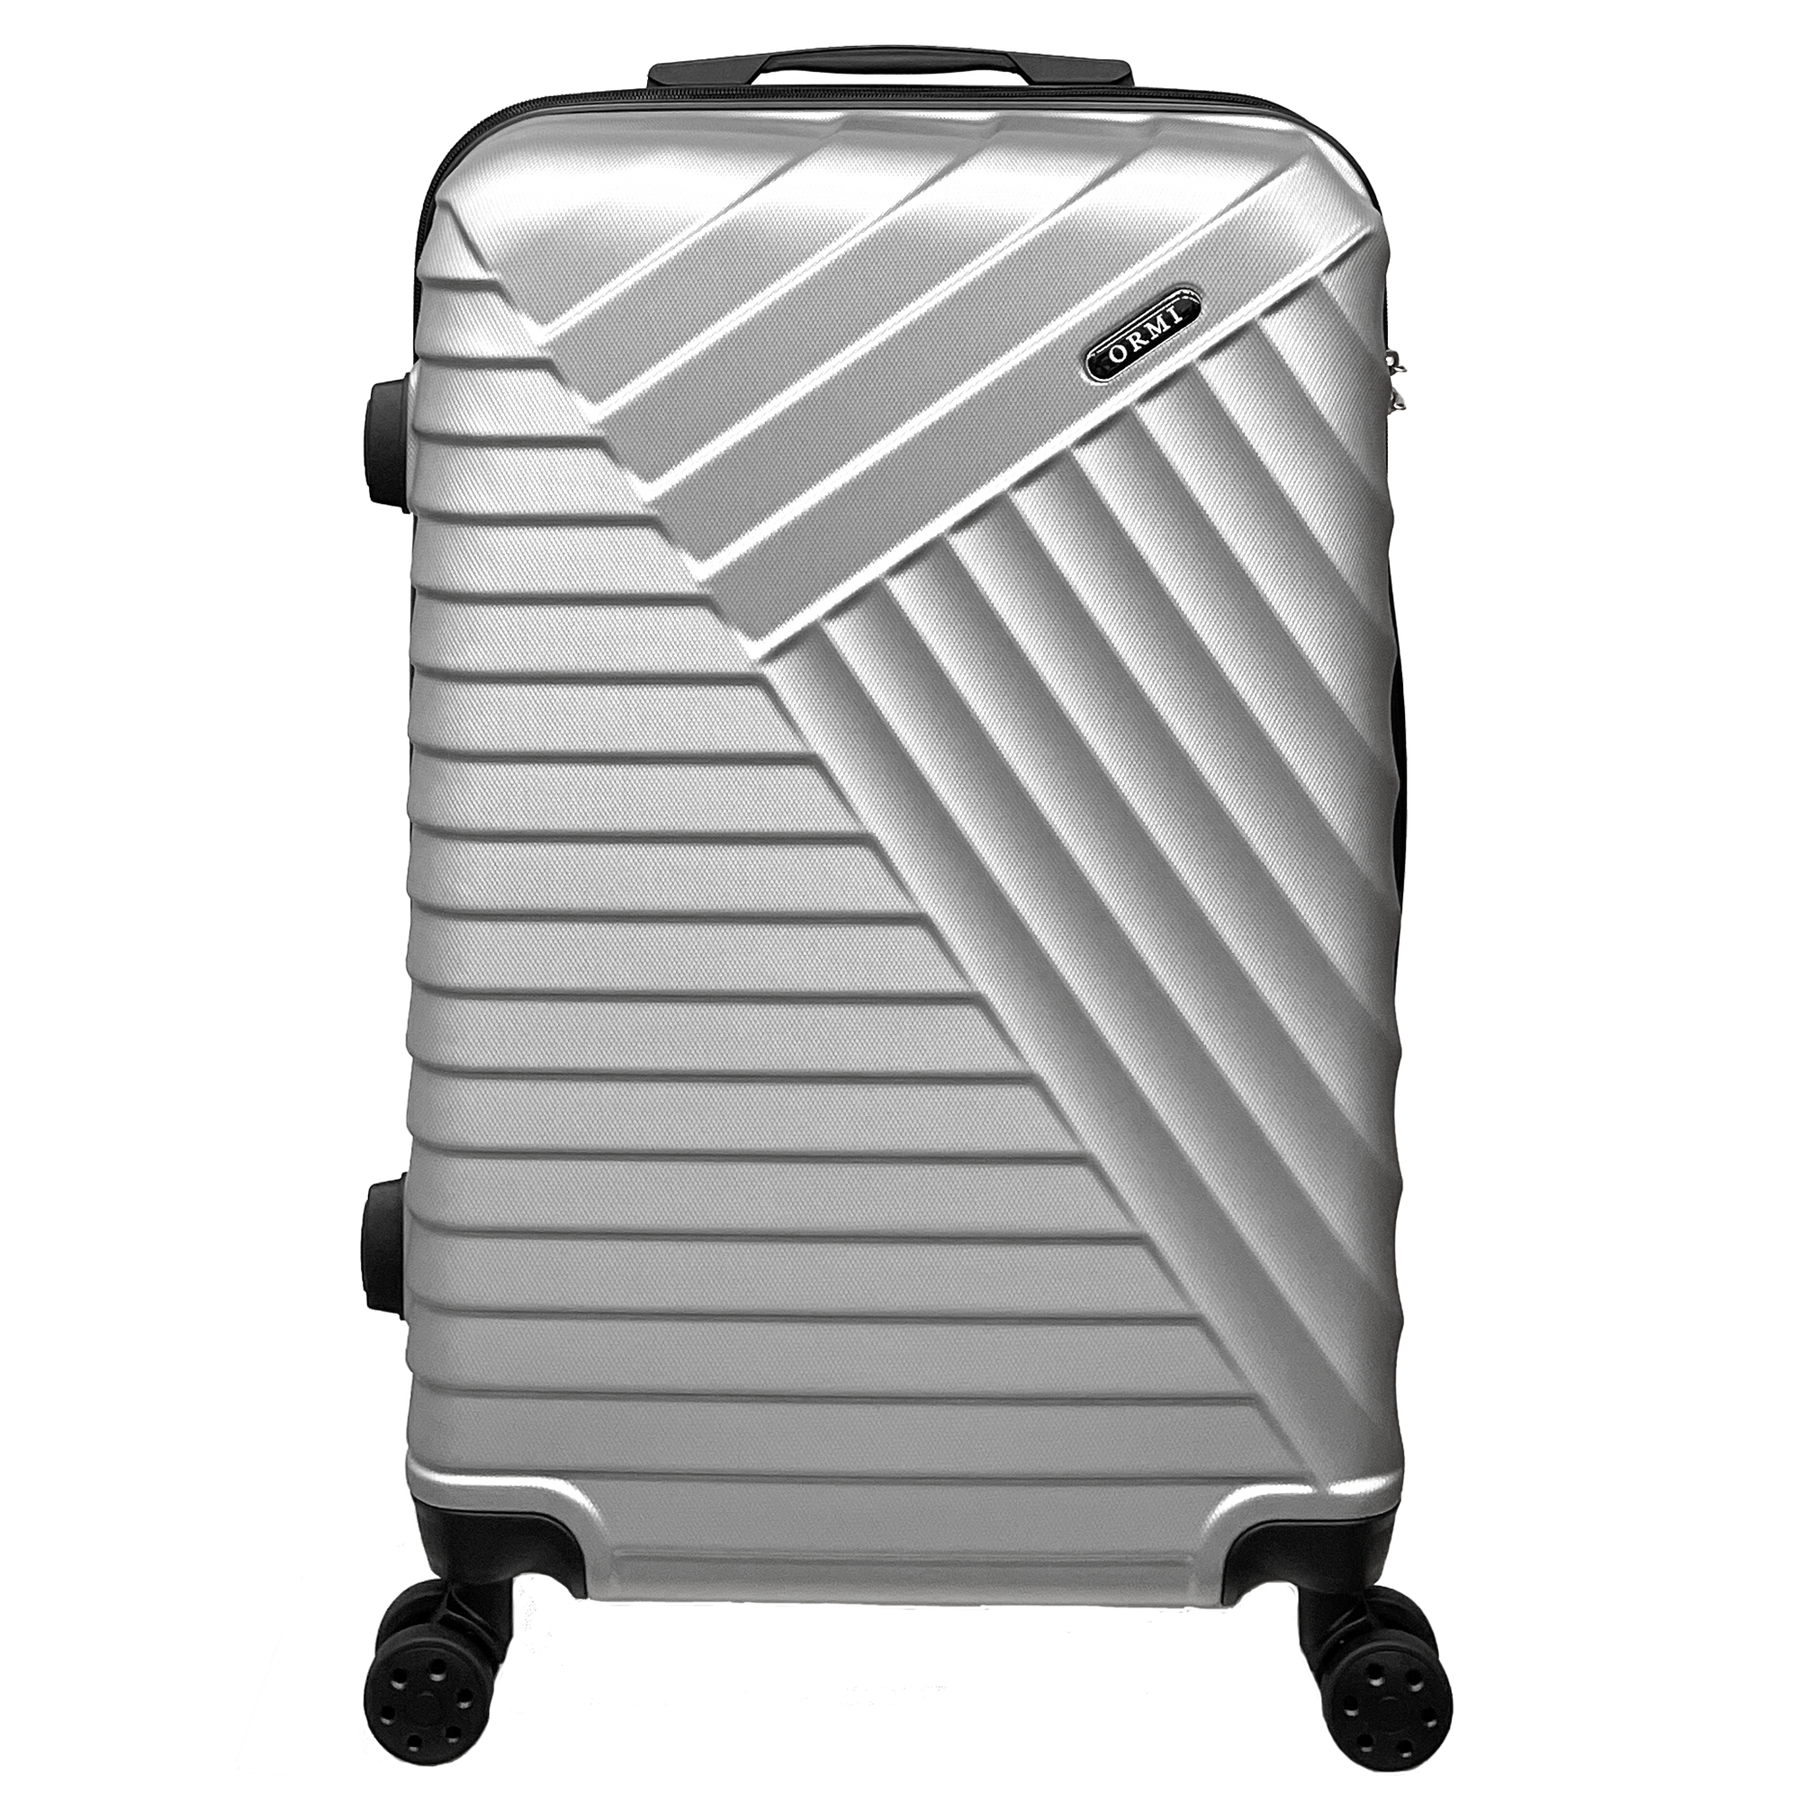 Μεσαία βαλίτσα STSHLine από ανθεκτικό ABS, διαστάσεις 65x43x26 εκ., με 4 διπλούς τροχούς 360° - Ελαφριά και ανθεκτική
